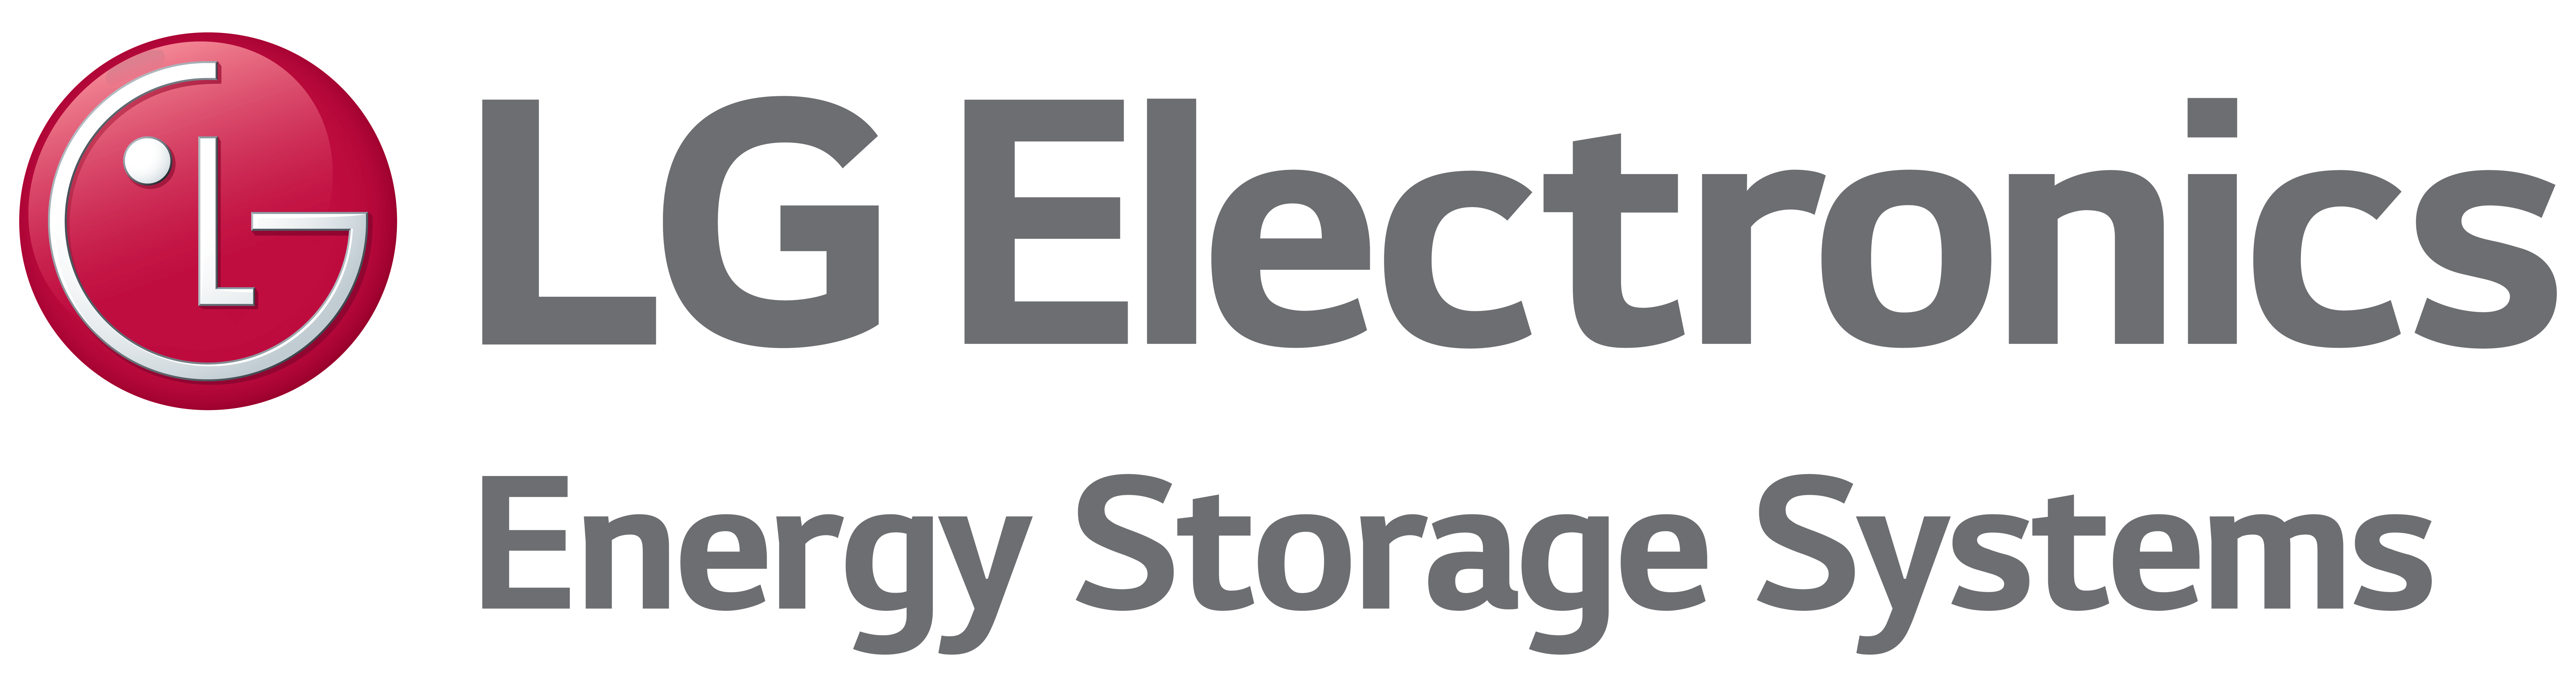 LG Electronics Energy Storage Systems